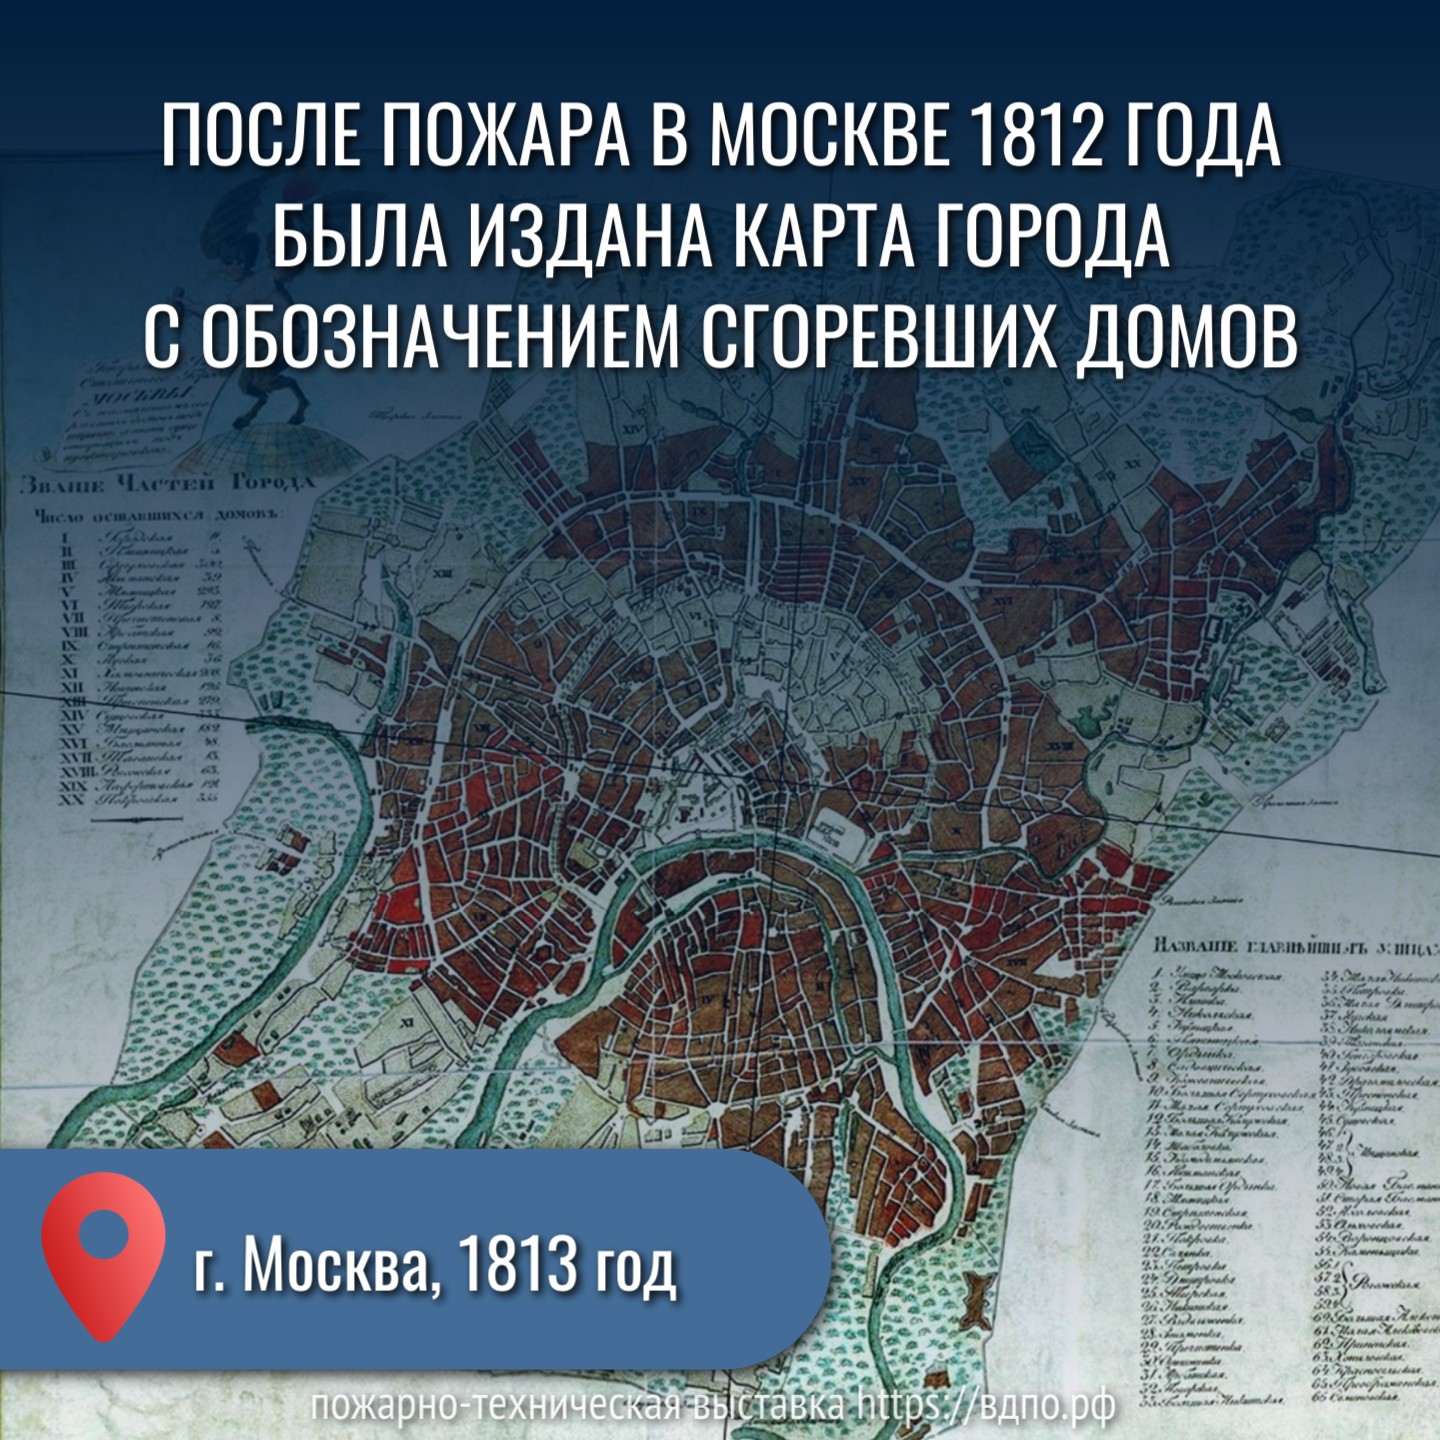 После пожара в Москве 1812 года была издана карта города с обозначением сгоревших домов  В 1813 году издан генеральный план Москвы, на котором отражены потери города после пожара 1812......